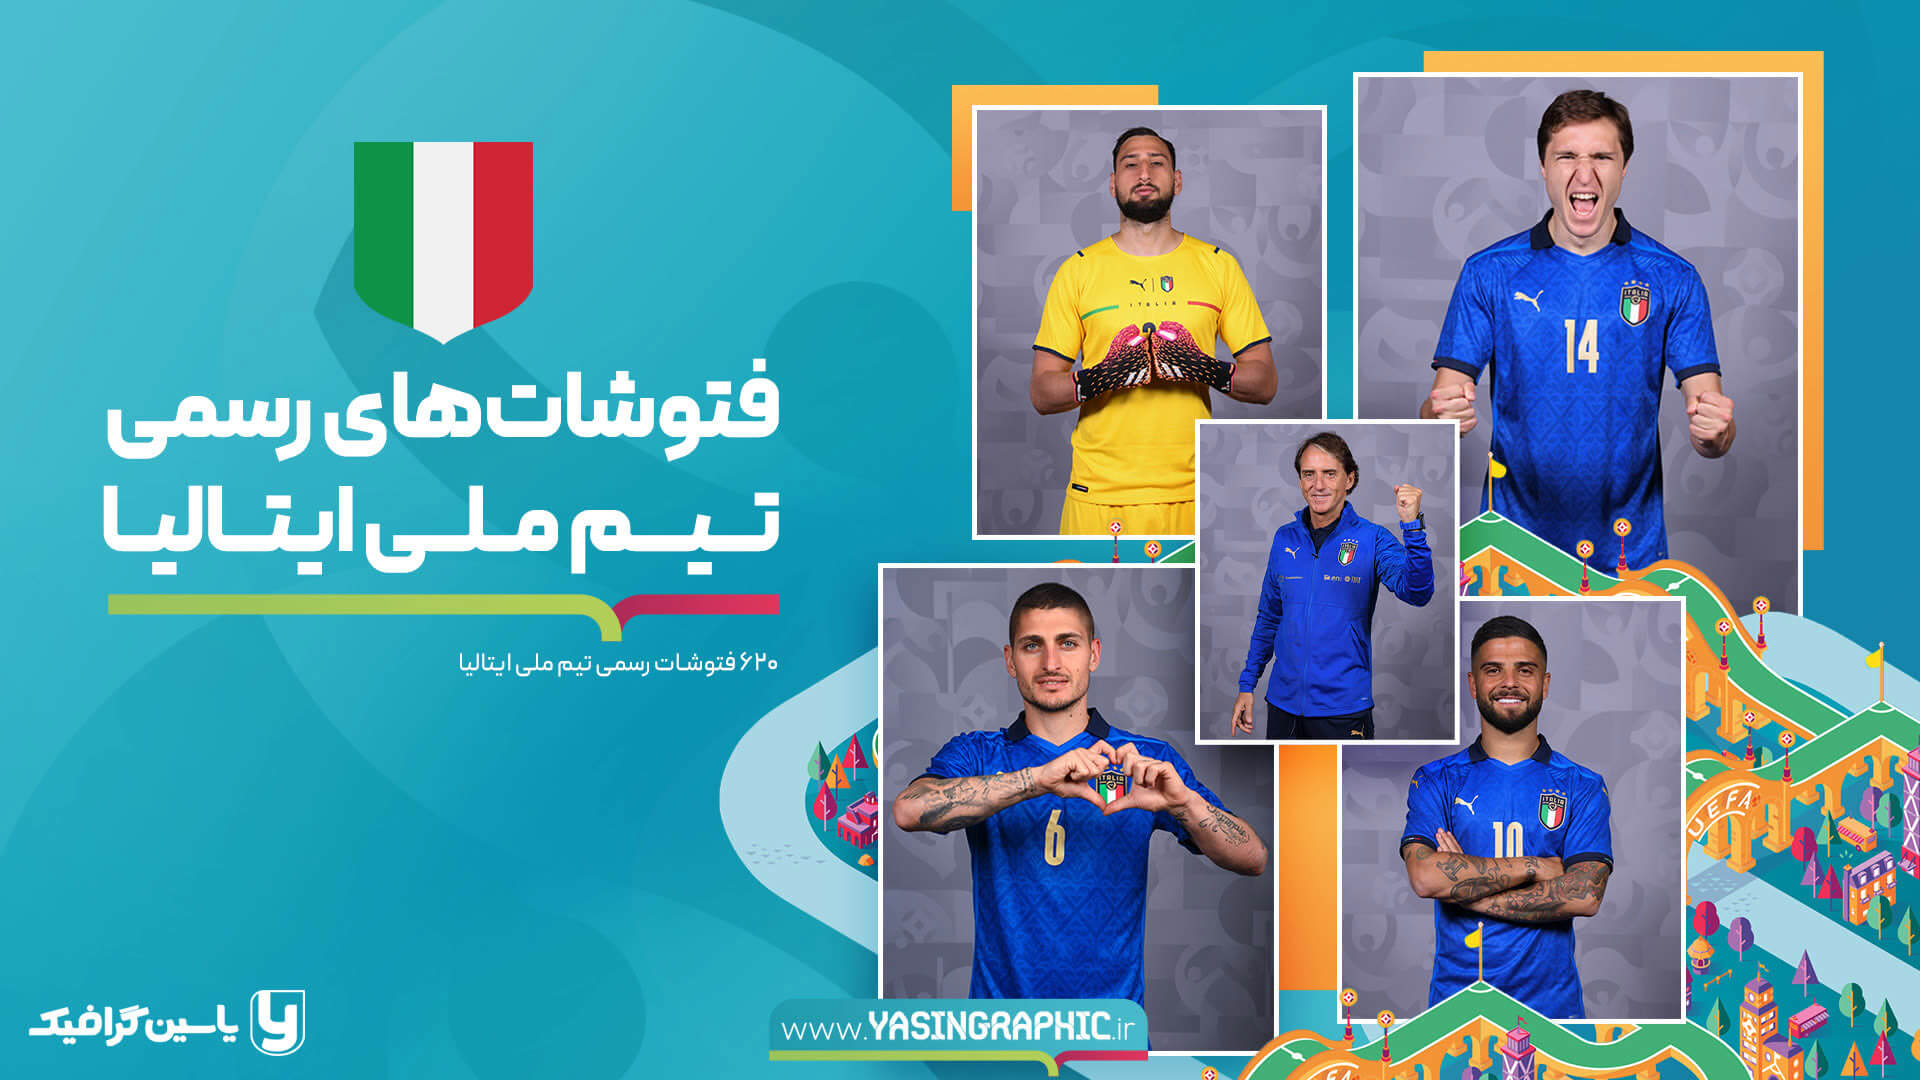 فتوشات های تیم ملی ایتالیا - یورو 2020